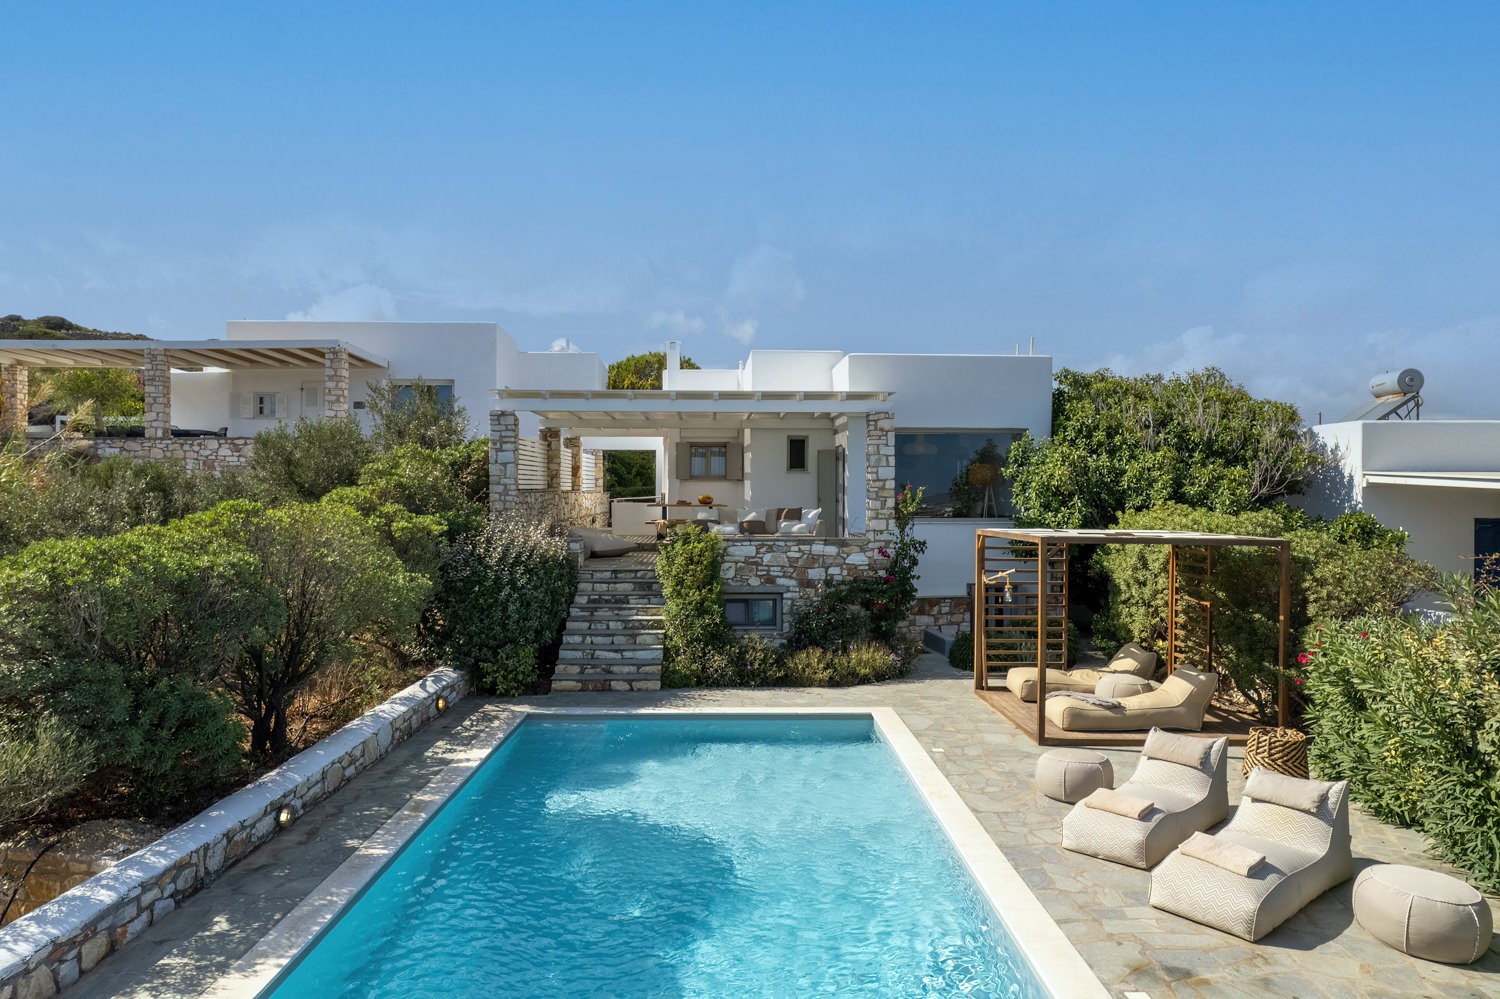 Amalgam Homes Zefyros villa, Paros island: image interior gallery